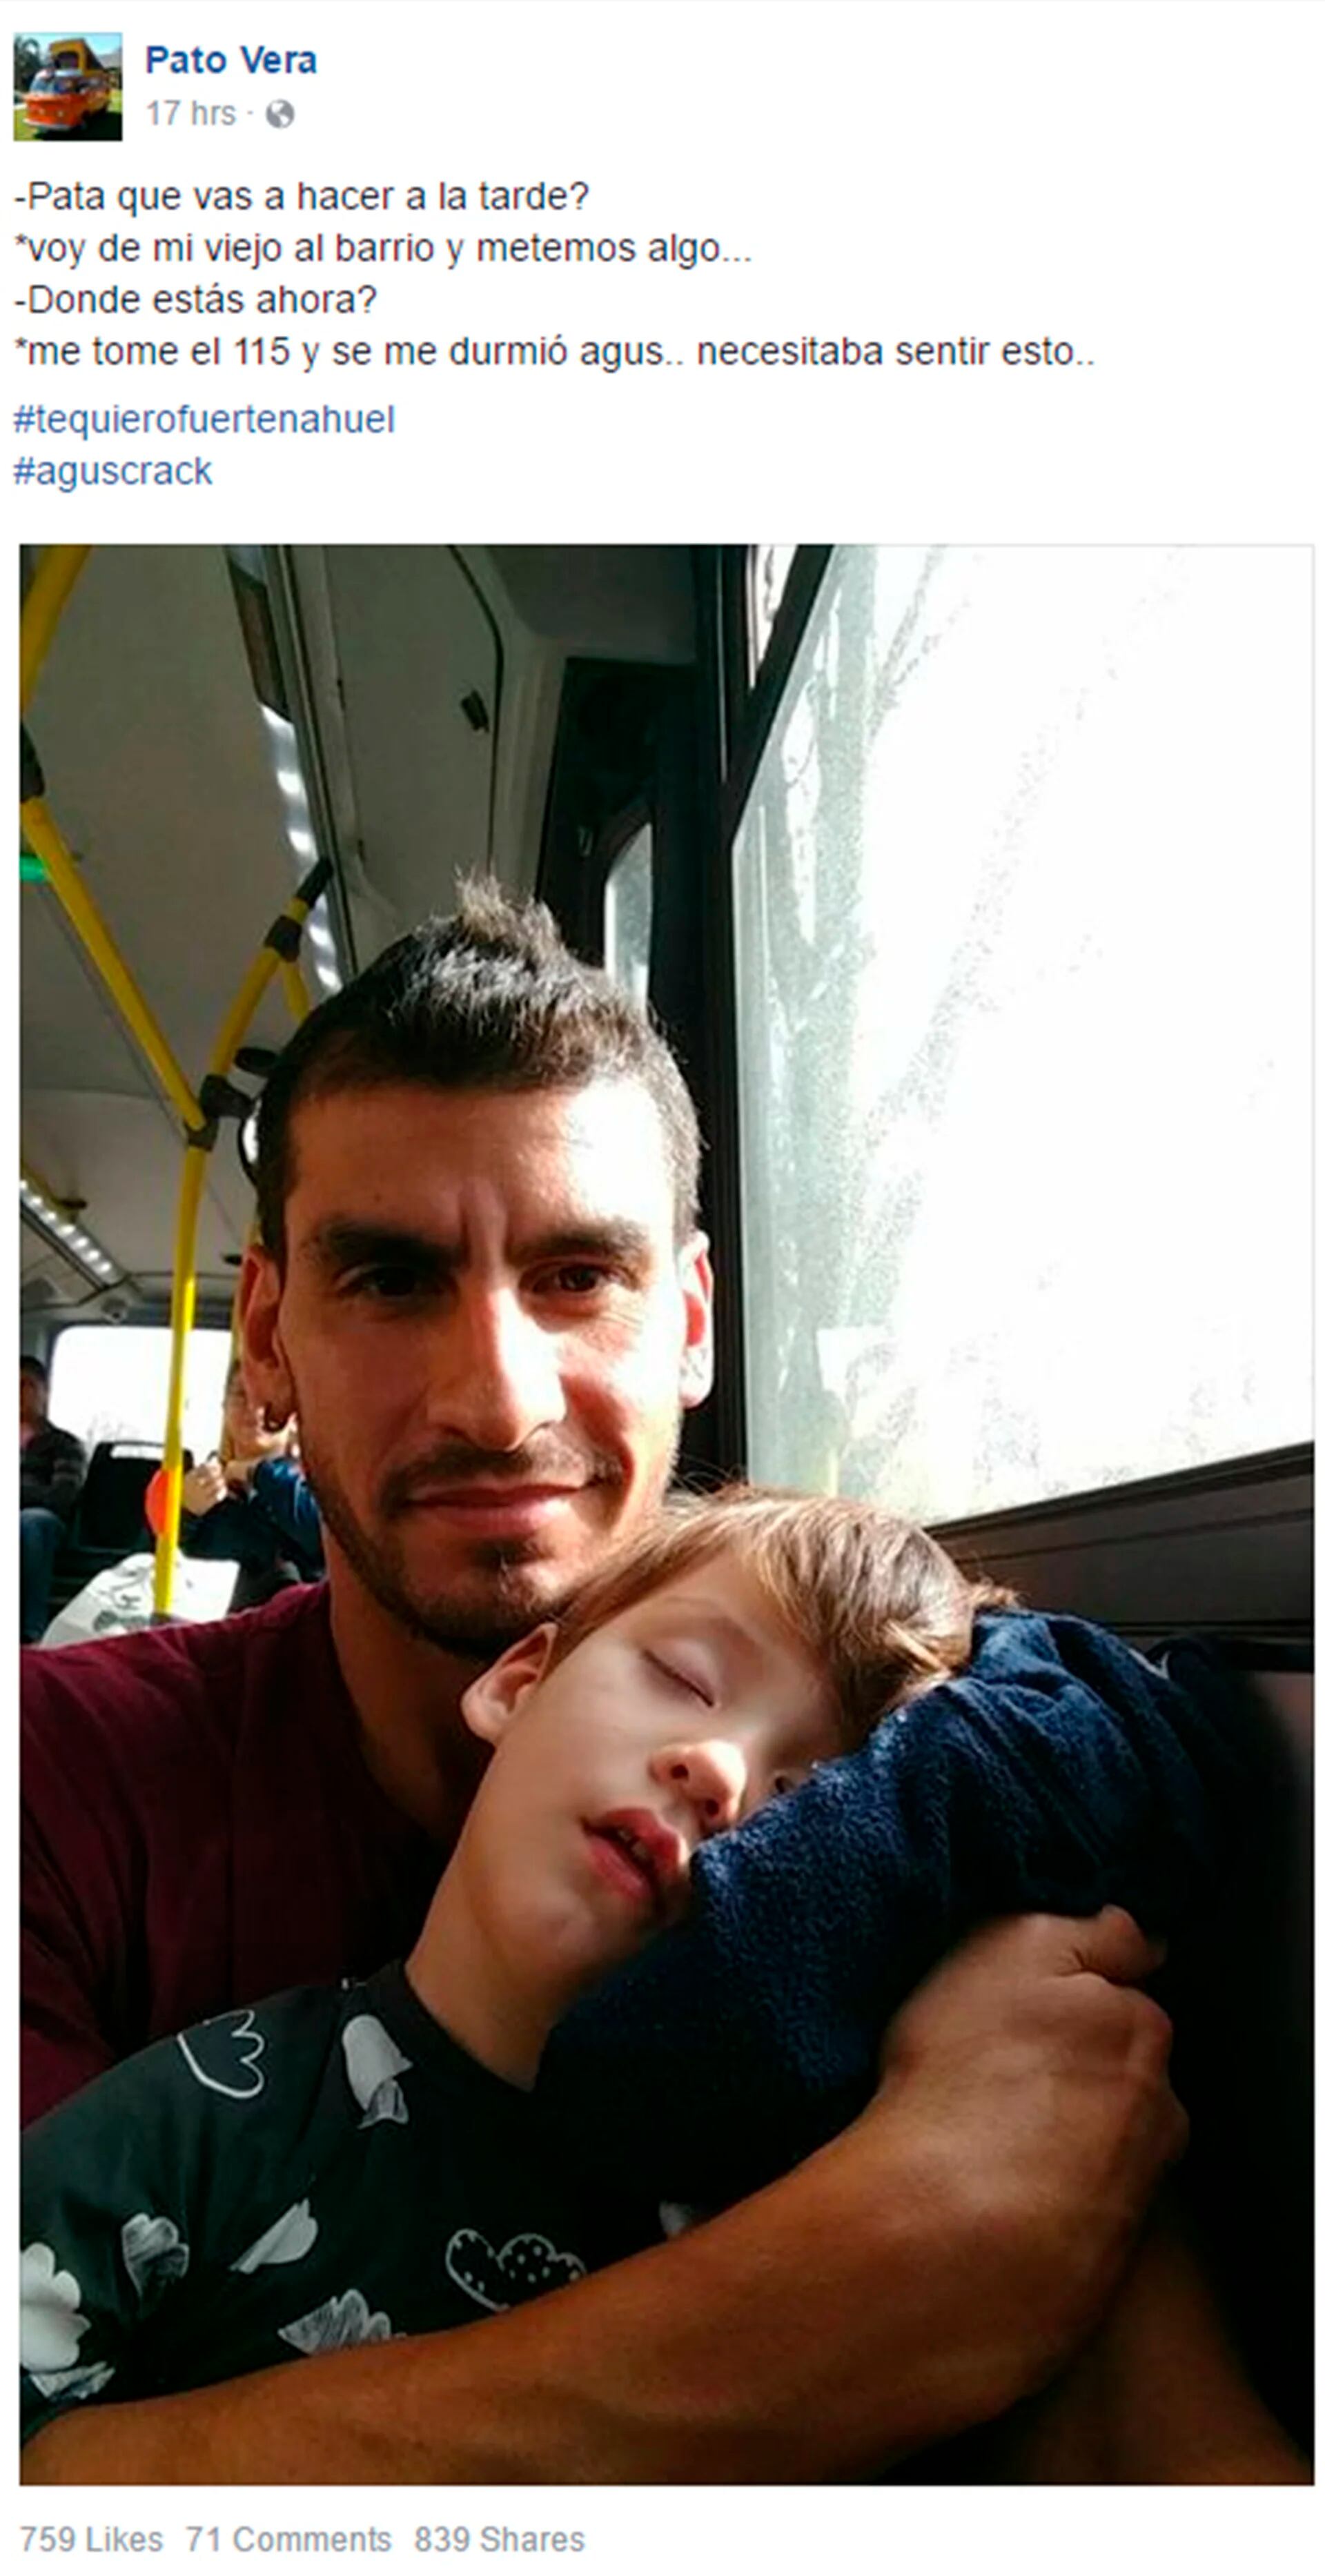 El “Patón” Guzmán a bordo del colectivo  en Rosario: un amigo suyo compartió la foto en Facebook